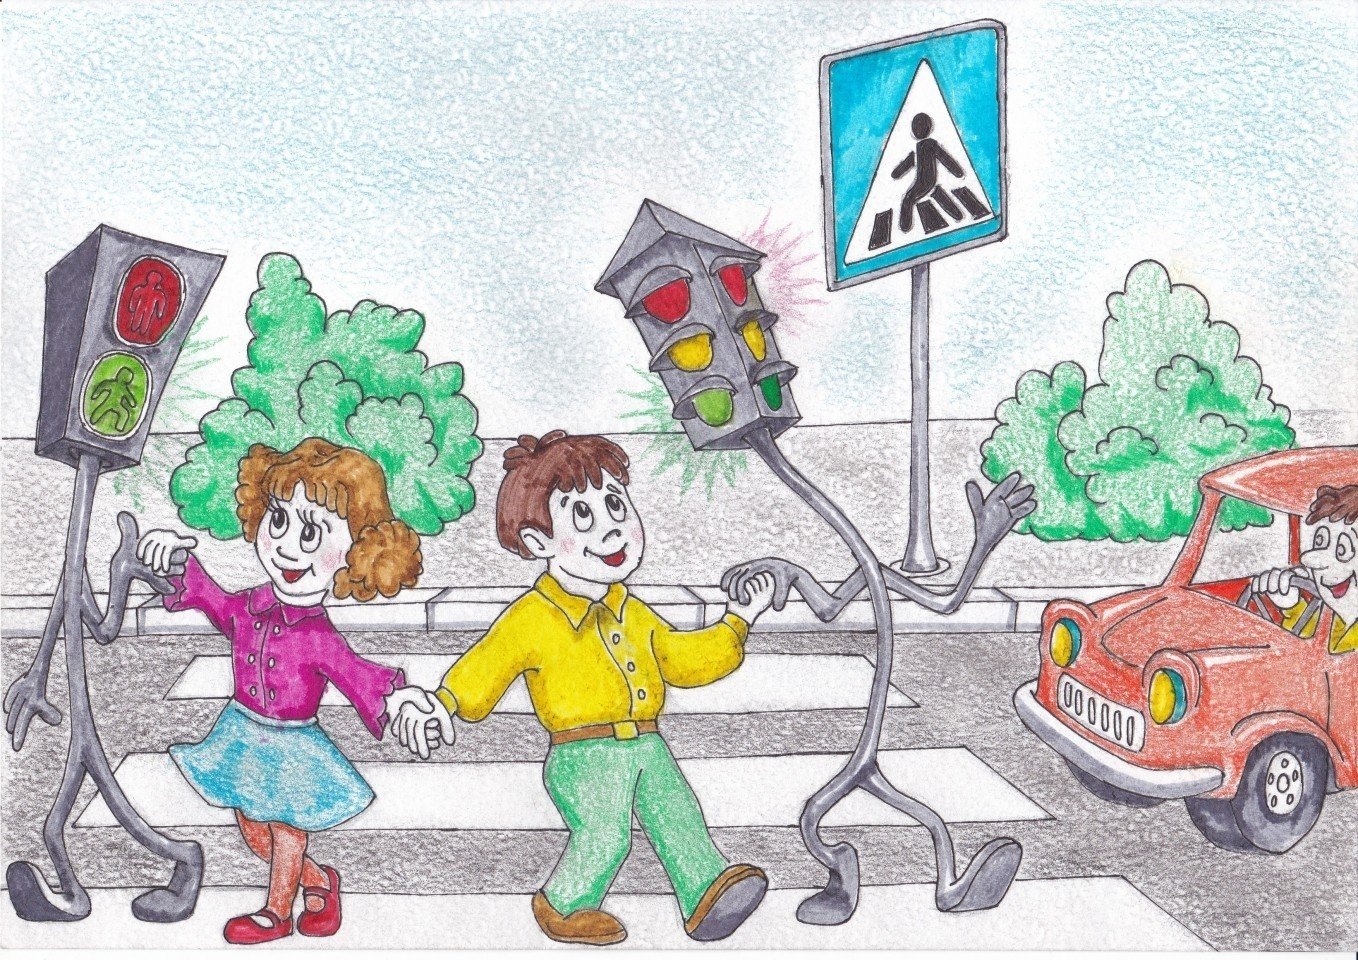 Рисунок по правилам дорожного движения